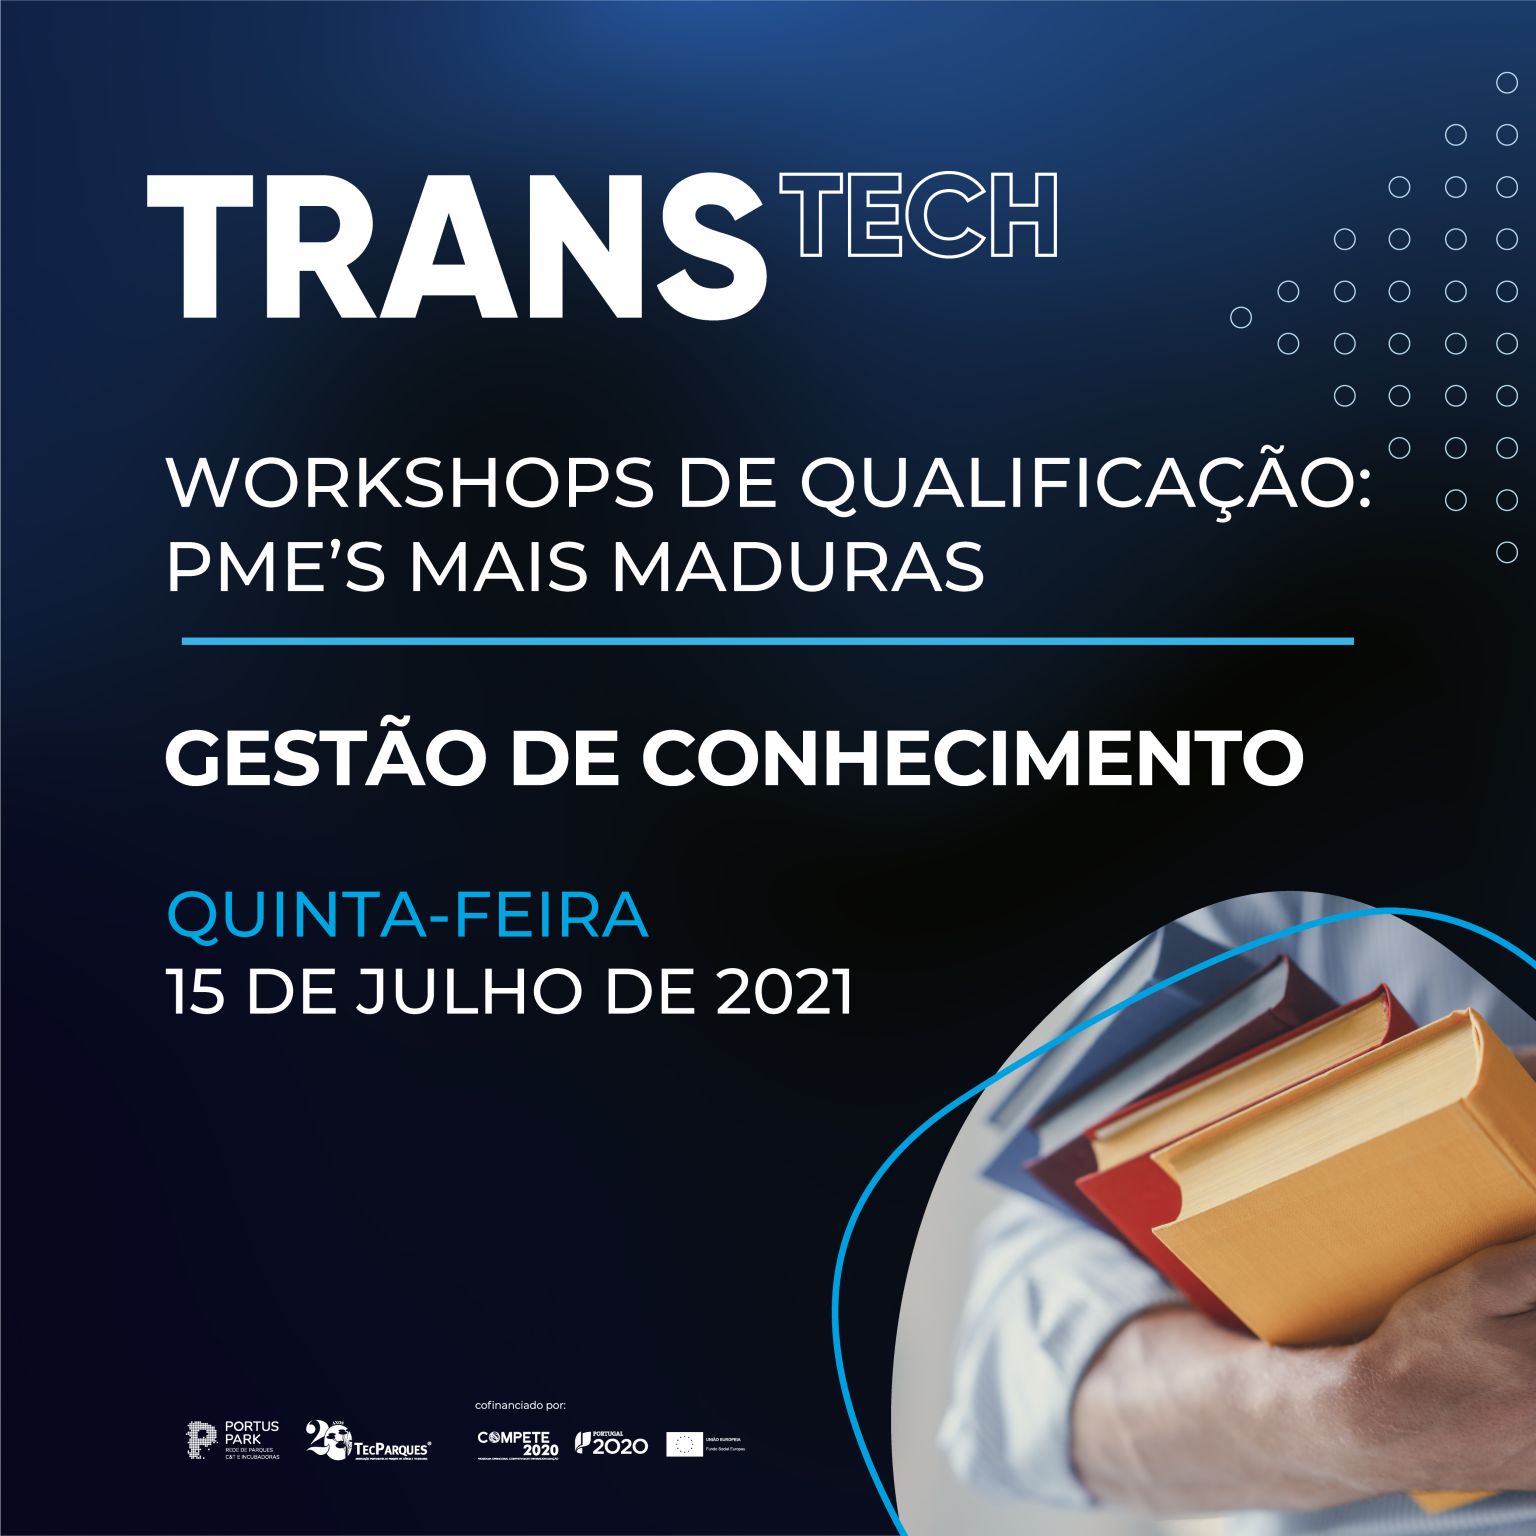 Workshop "Gestão do Conhecimento" - Projeto TRANSTECH